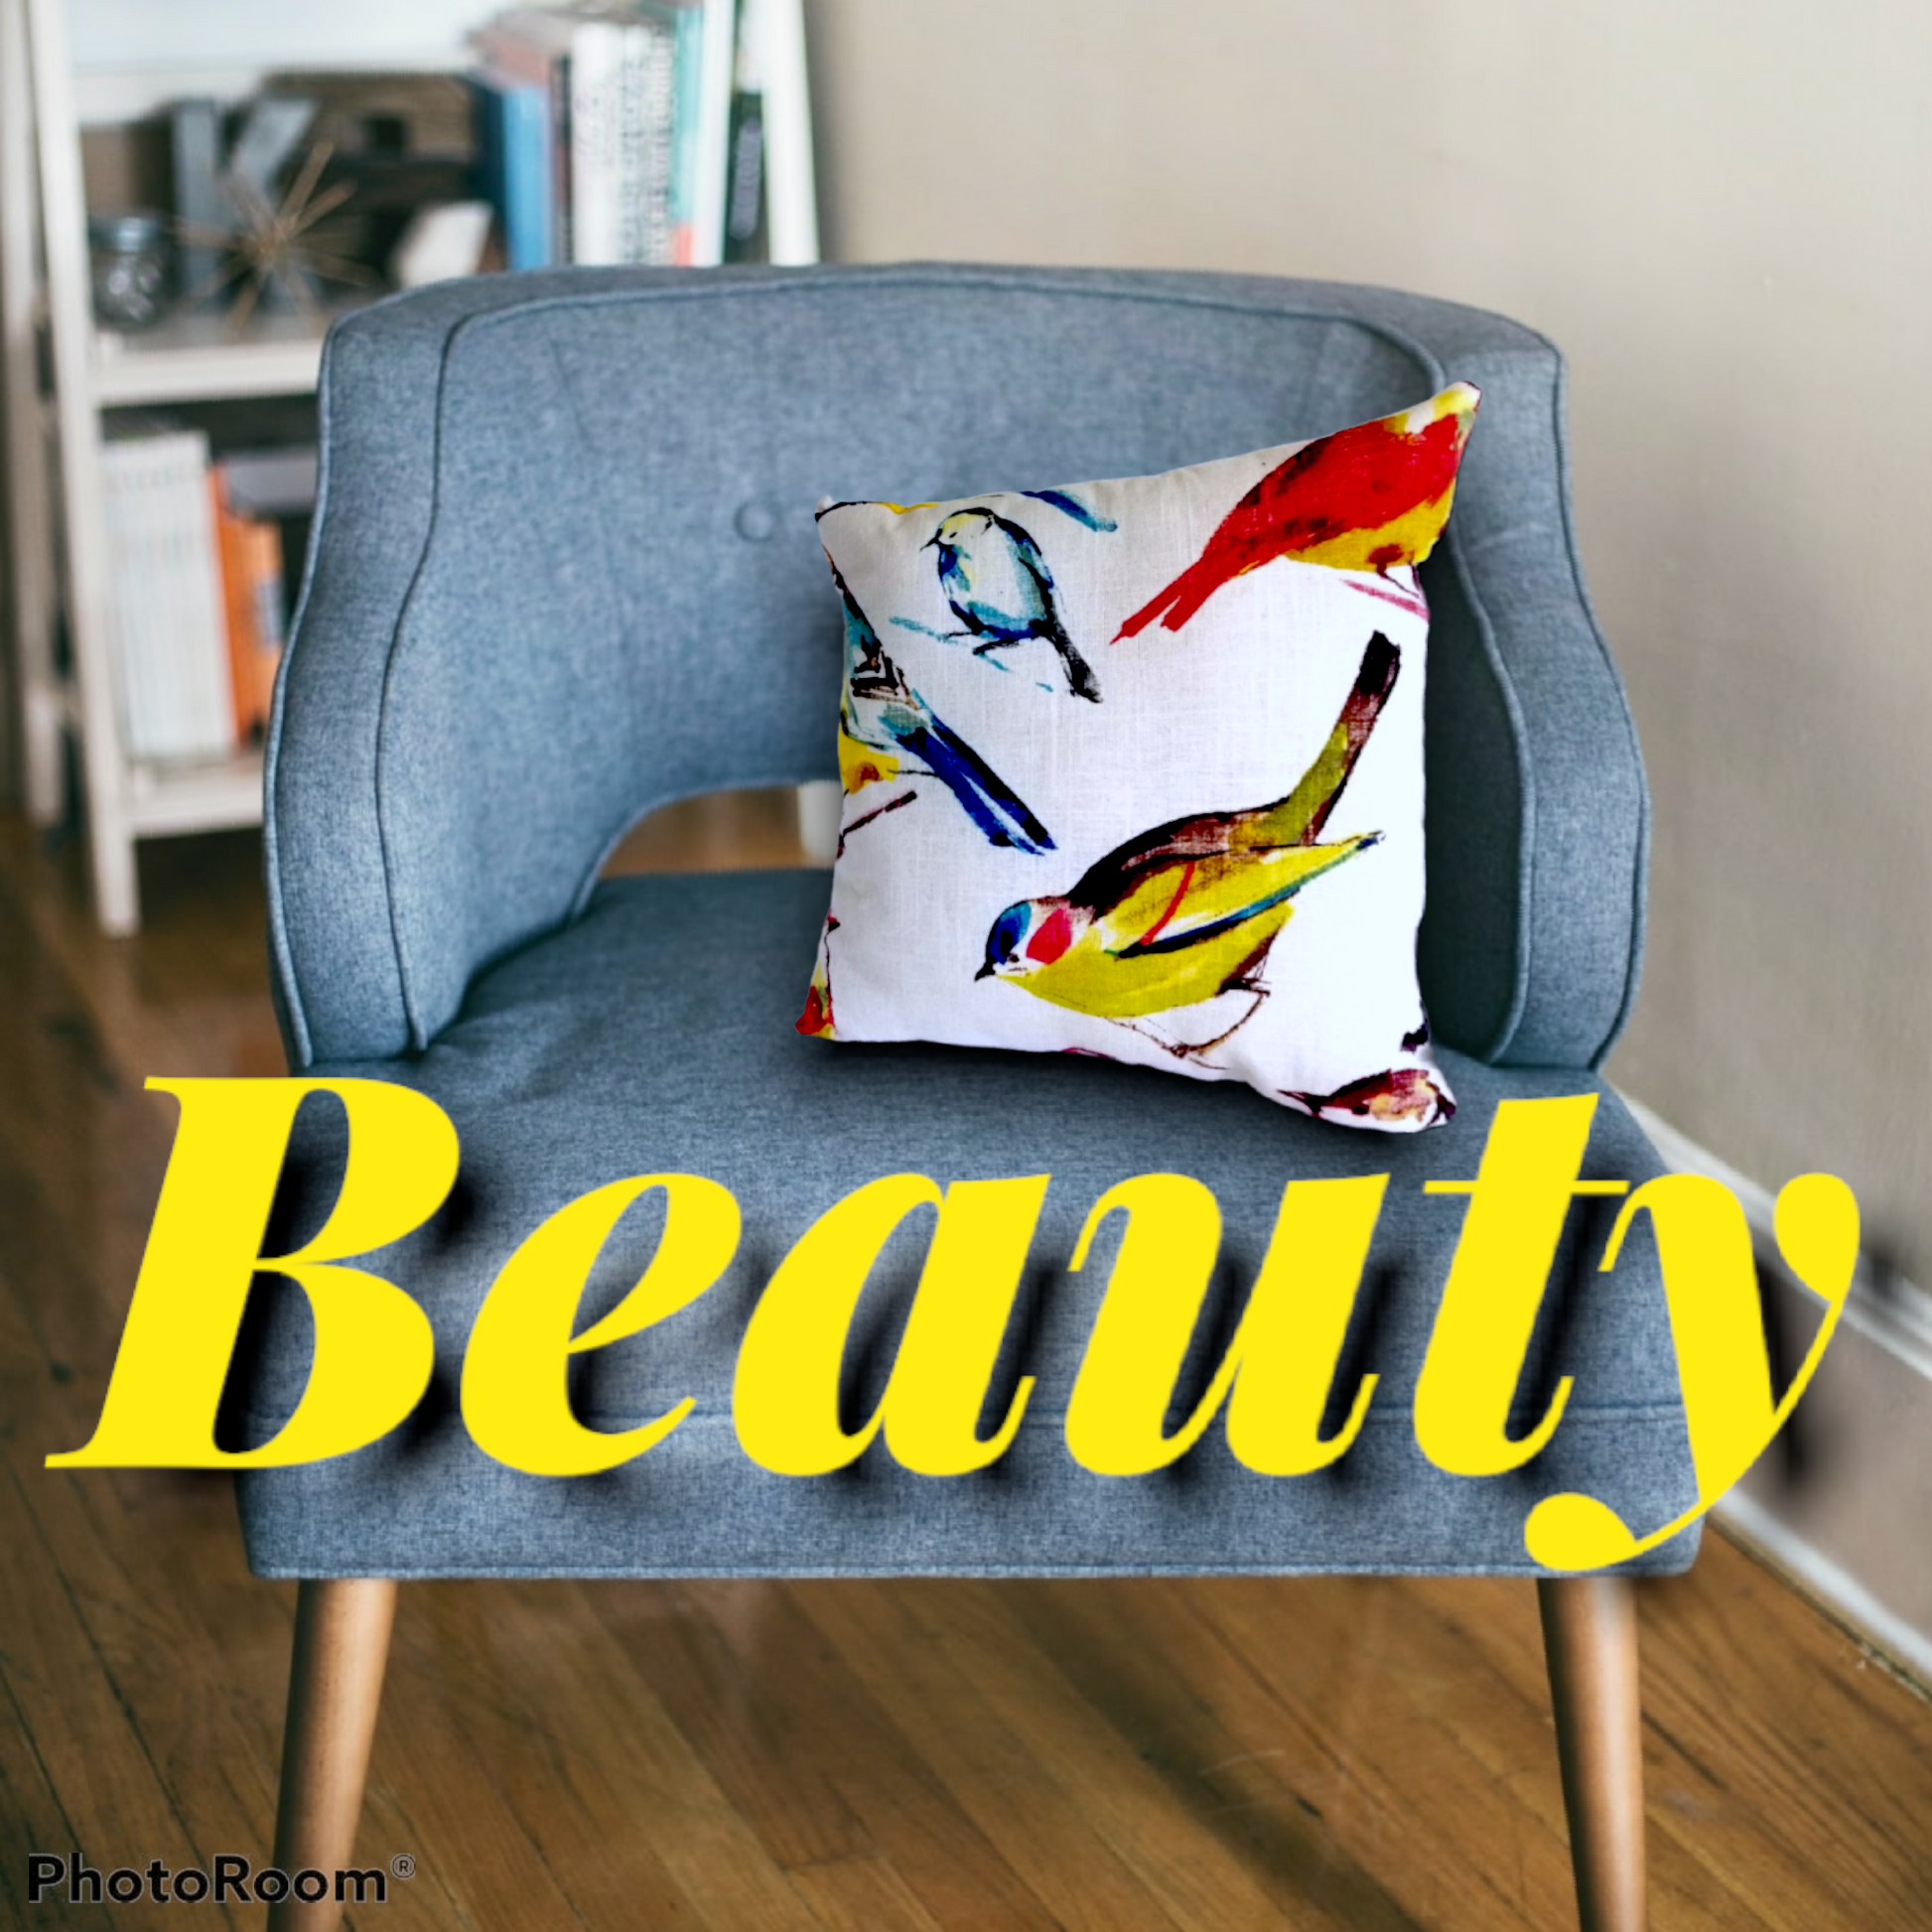 Robert Allen Home Birdwatcher Fabric luxury designer pillow. - Advenique Home Decor